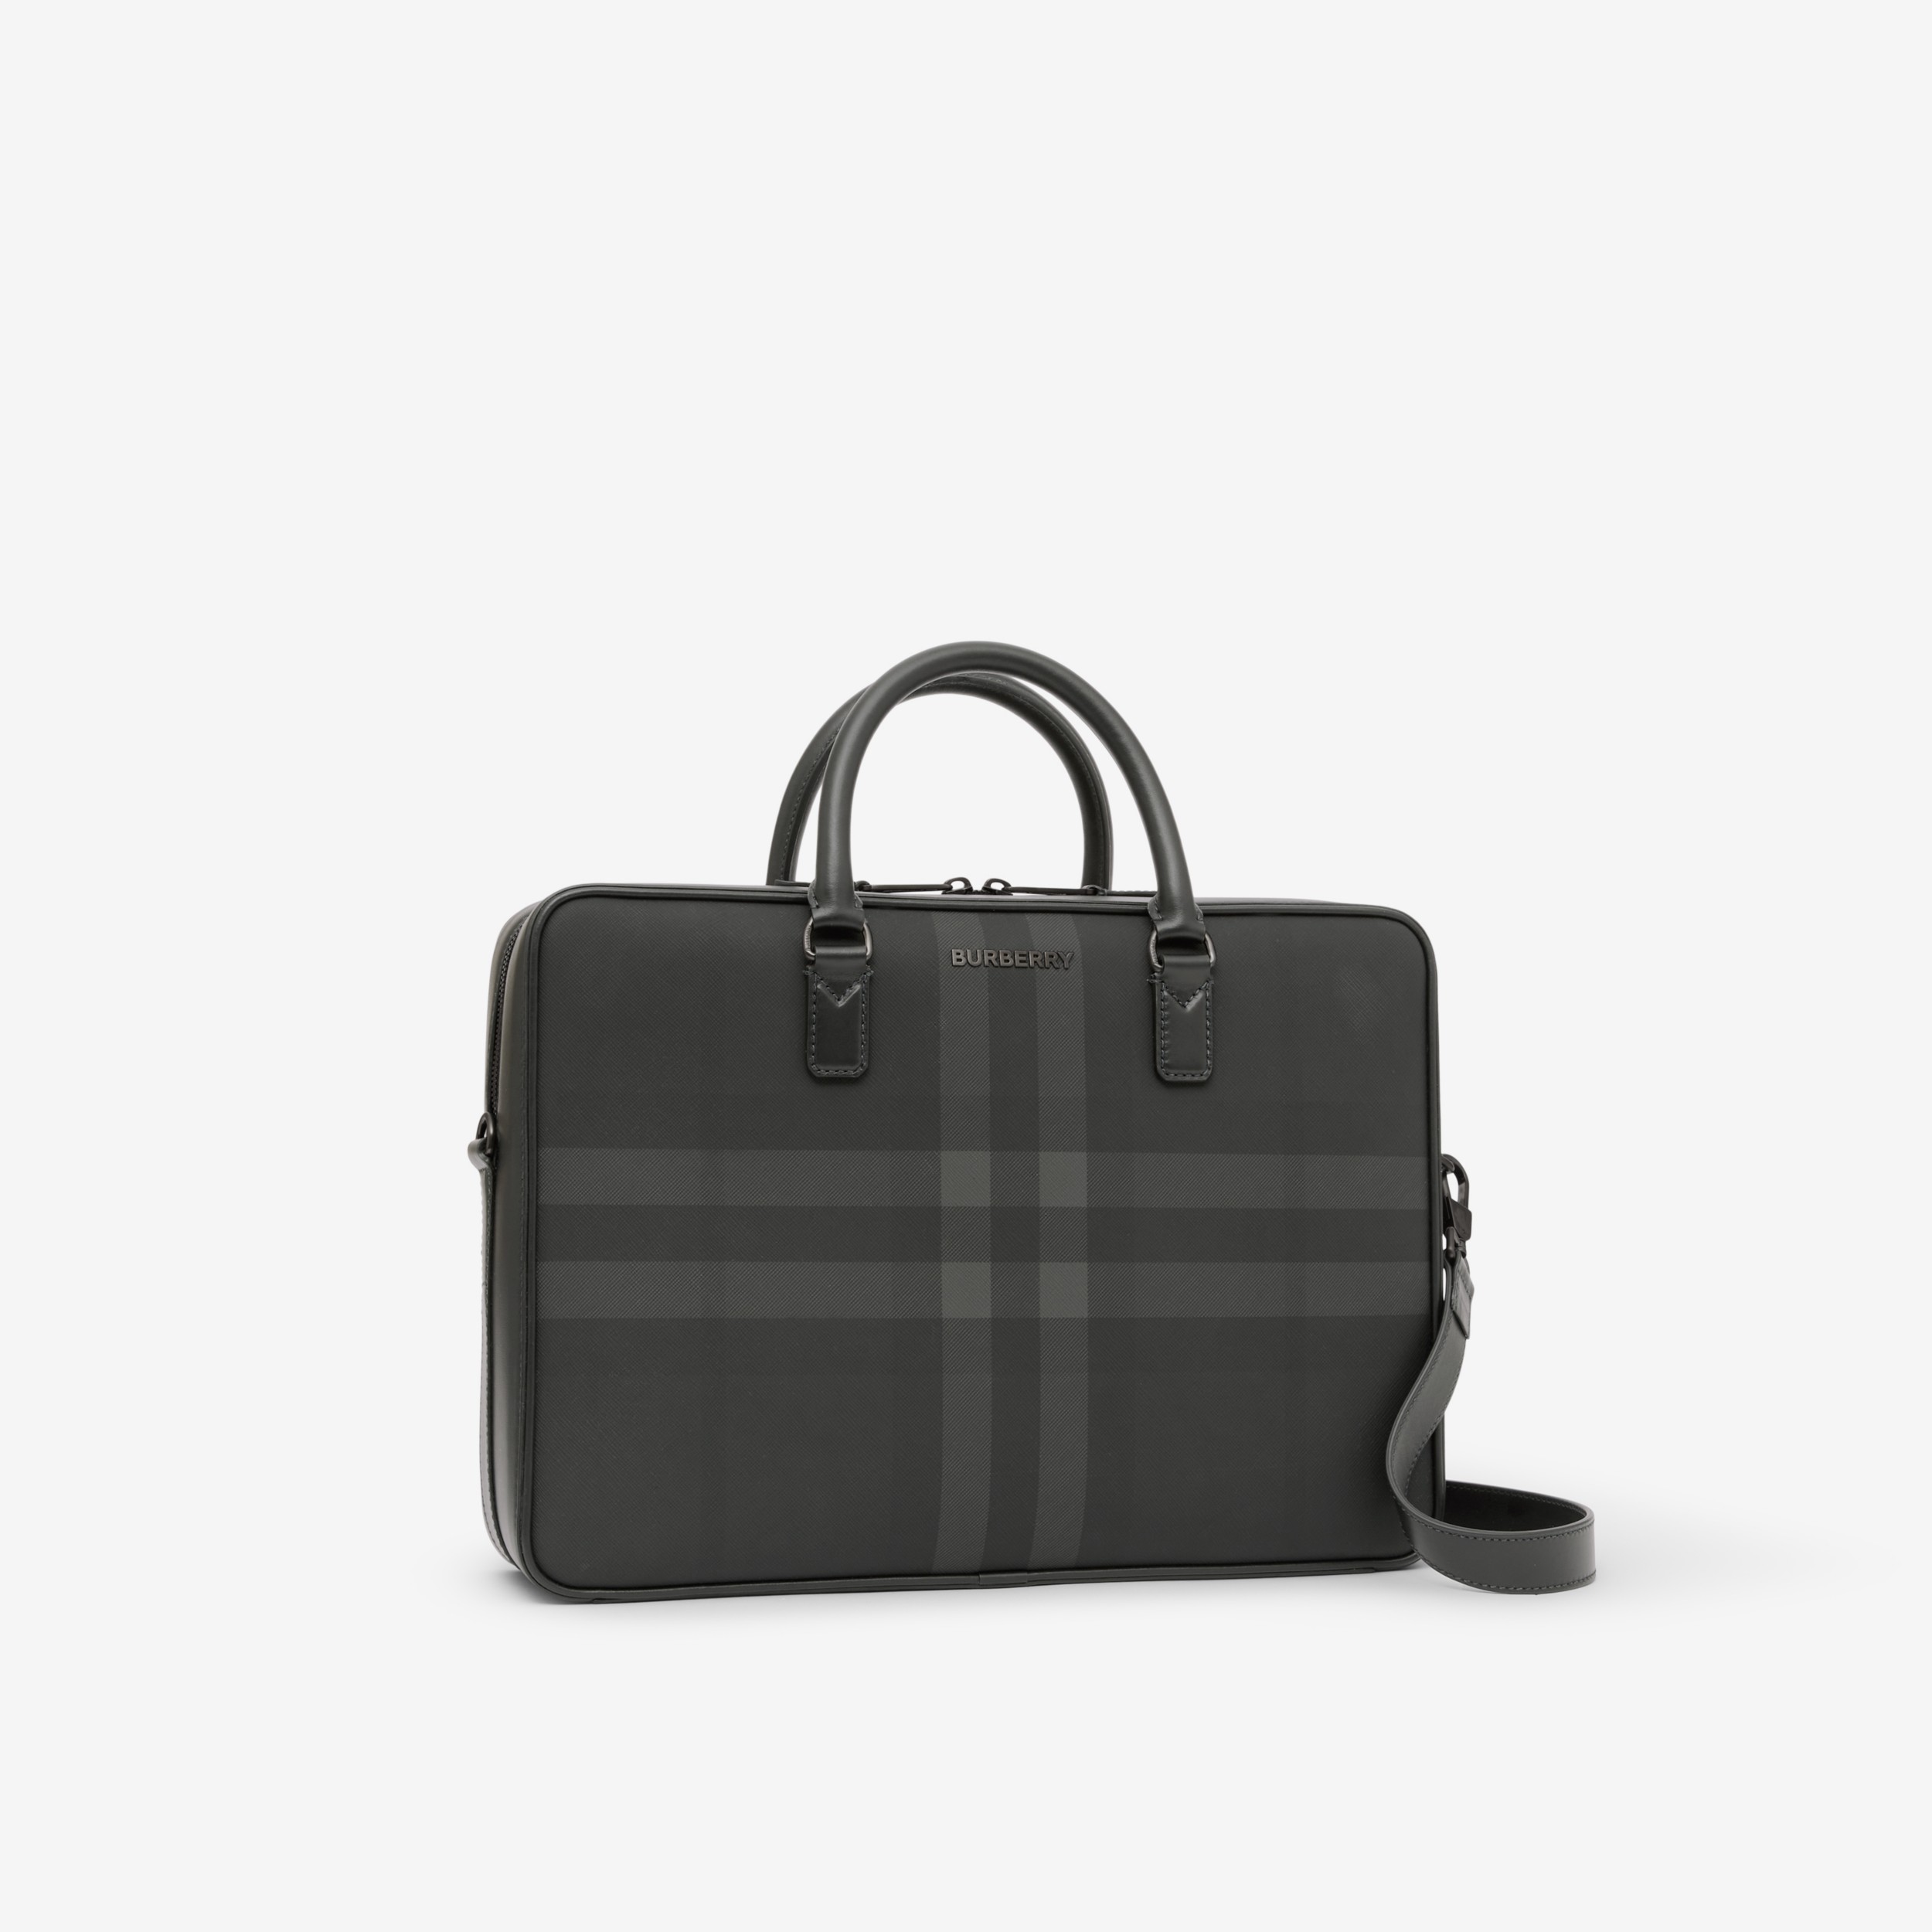 Top 34+ imagen burberry briefcase